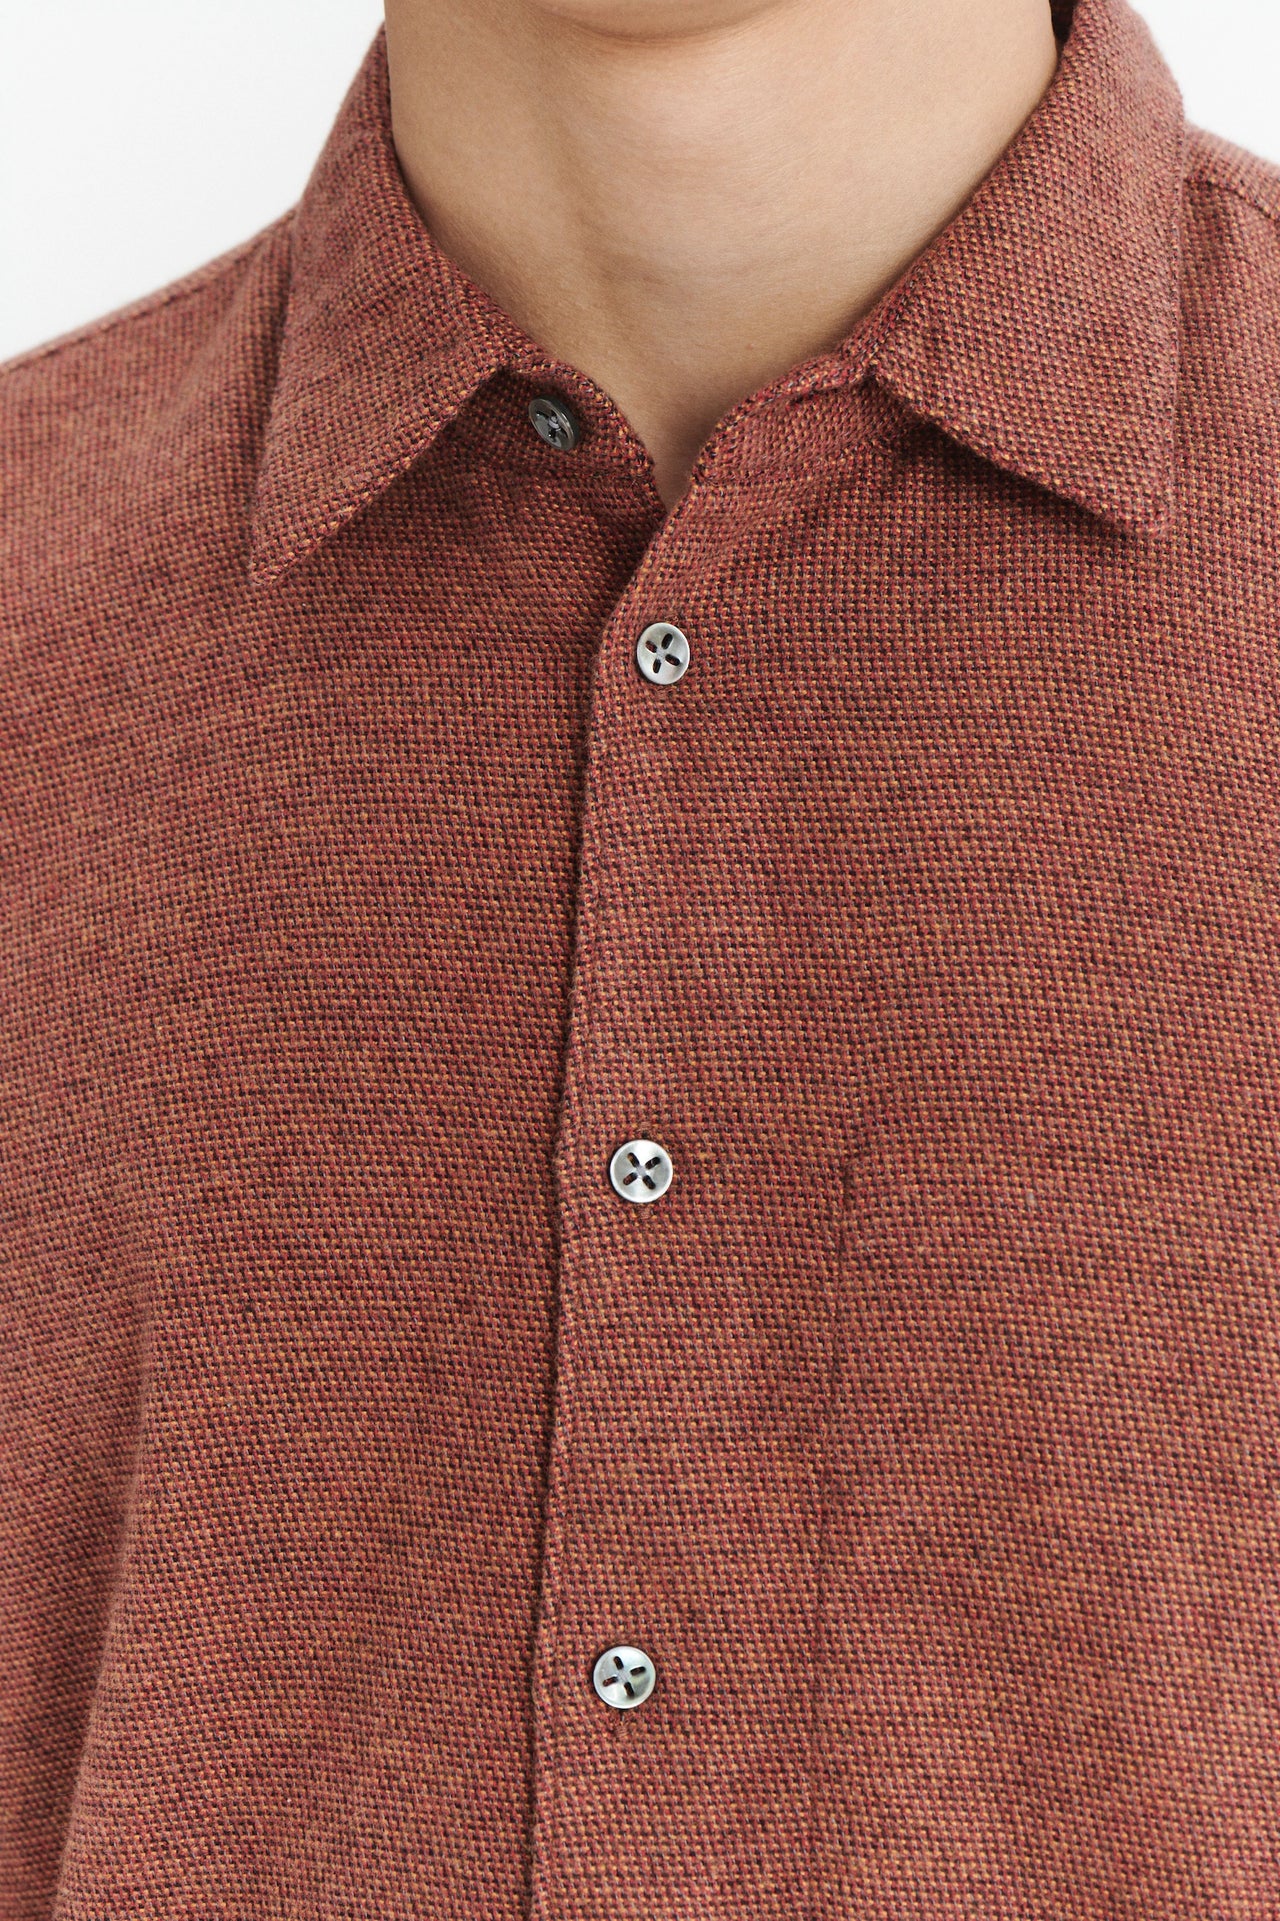 アイアンレッドのポルトガルコットンフランネルを使用したFeel Goodシャツ